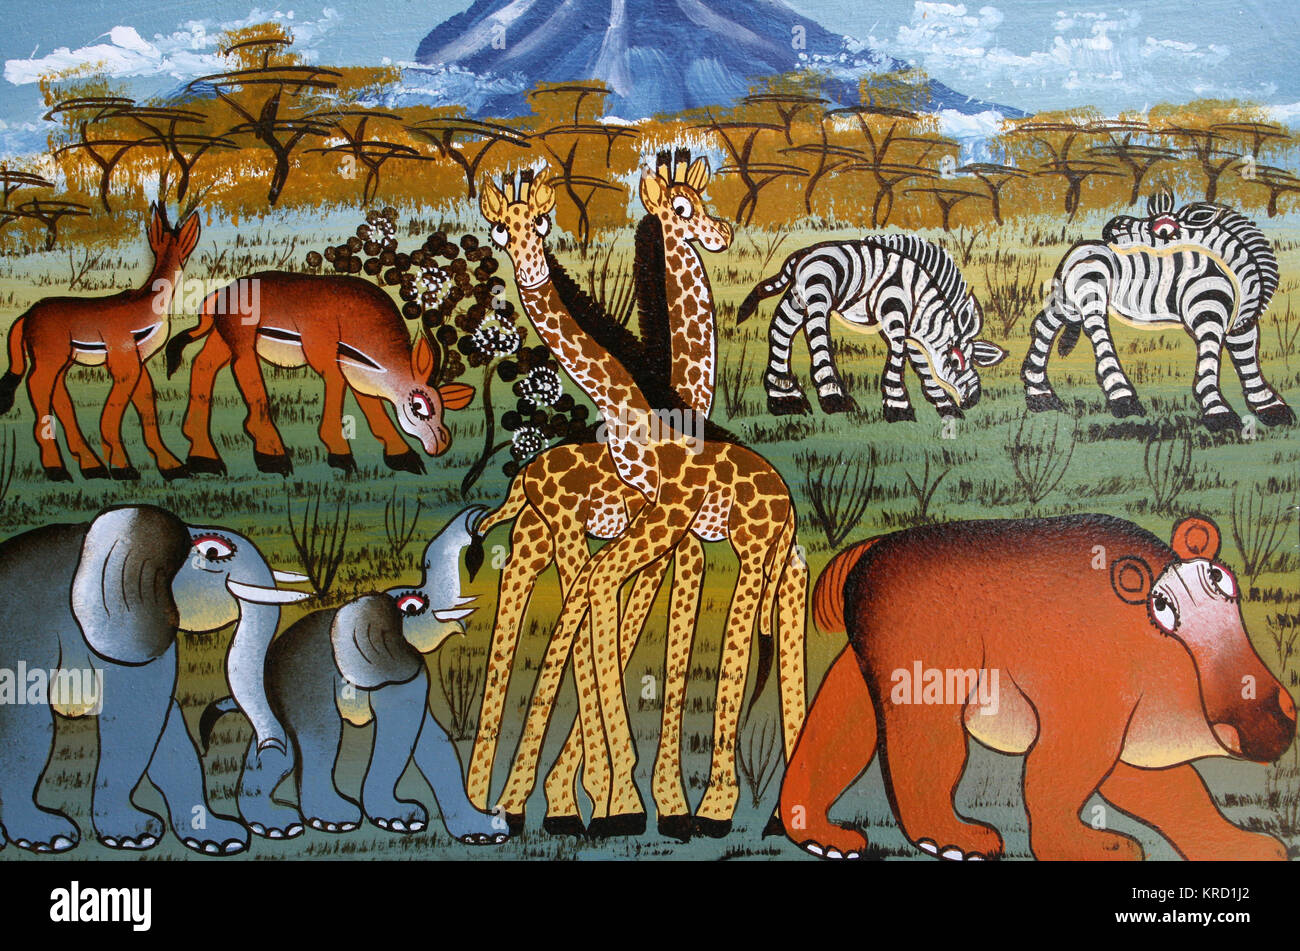 Tinga Tinga Pintura de Animales safari africano Foto de stock